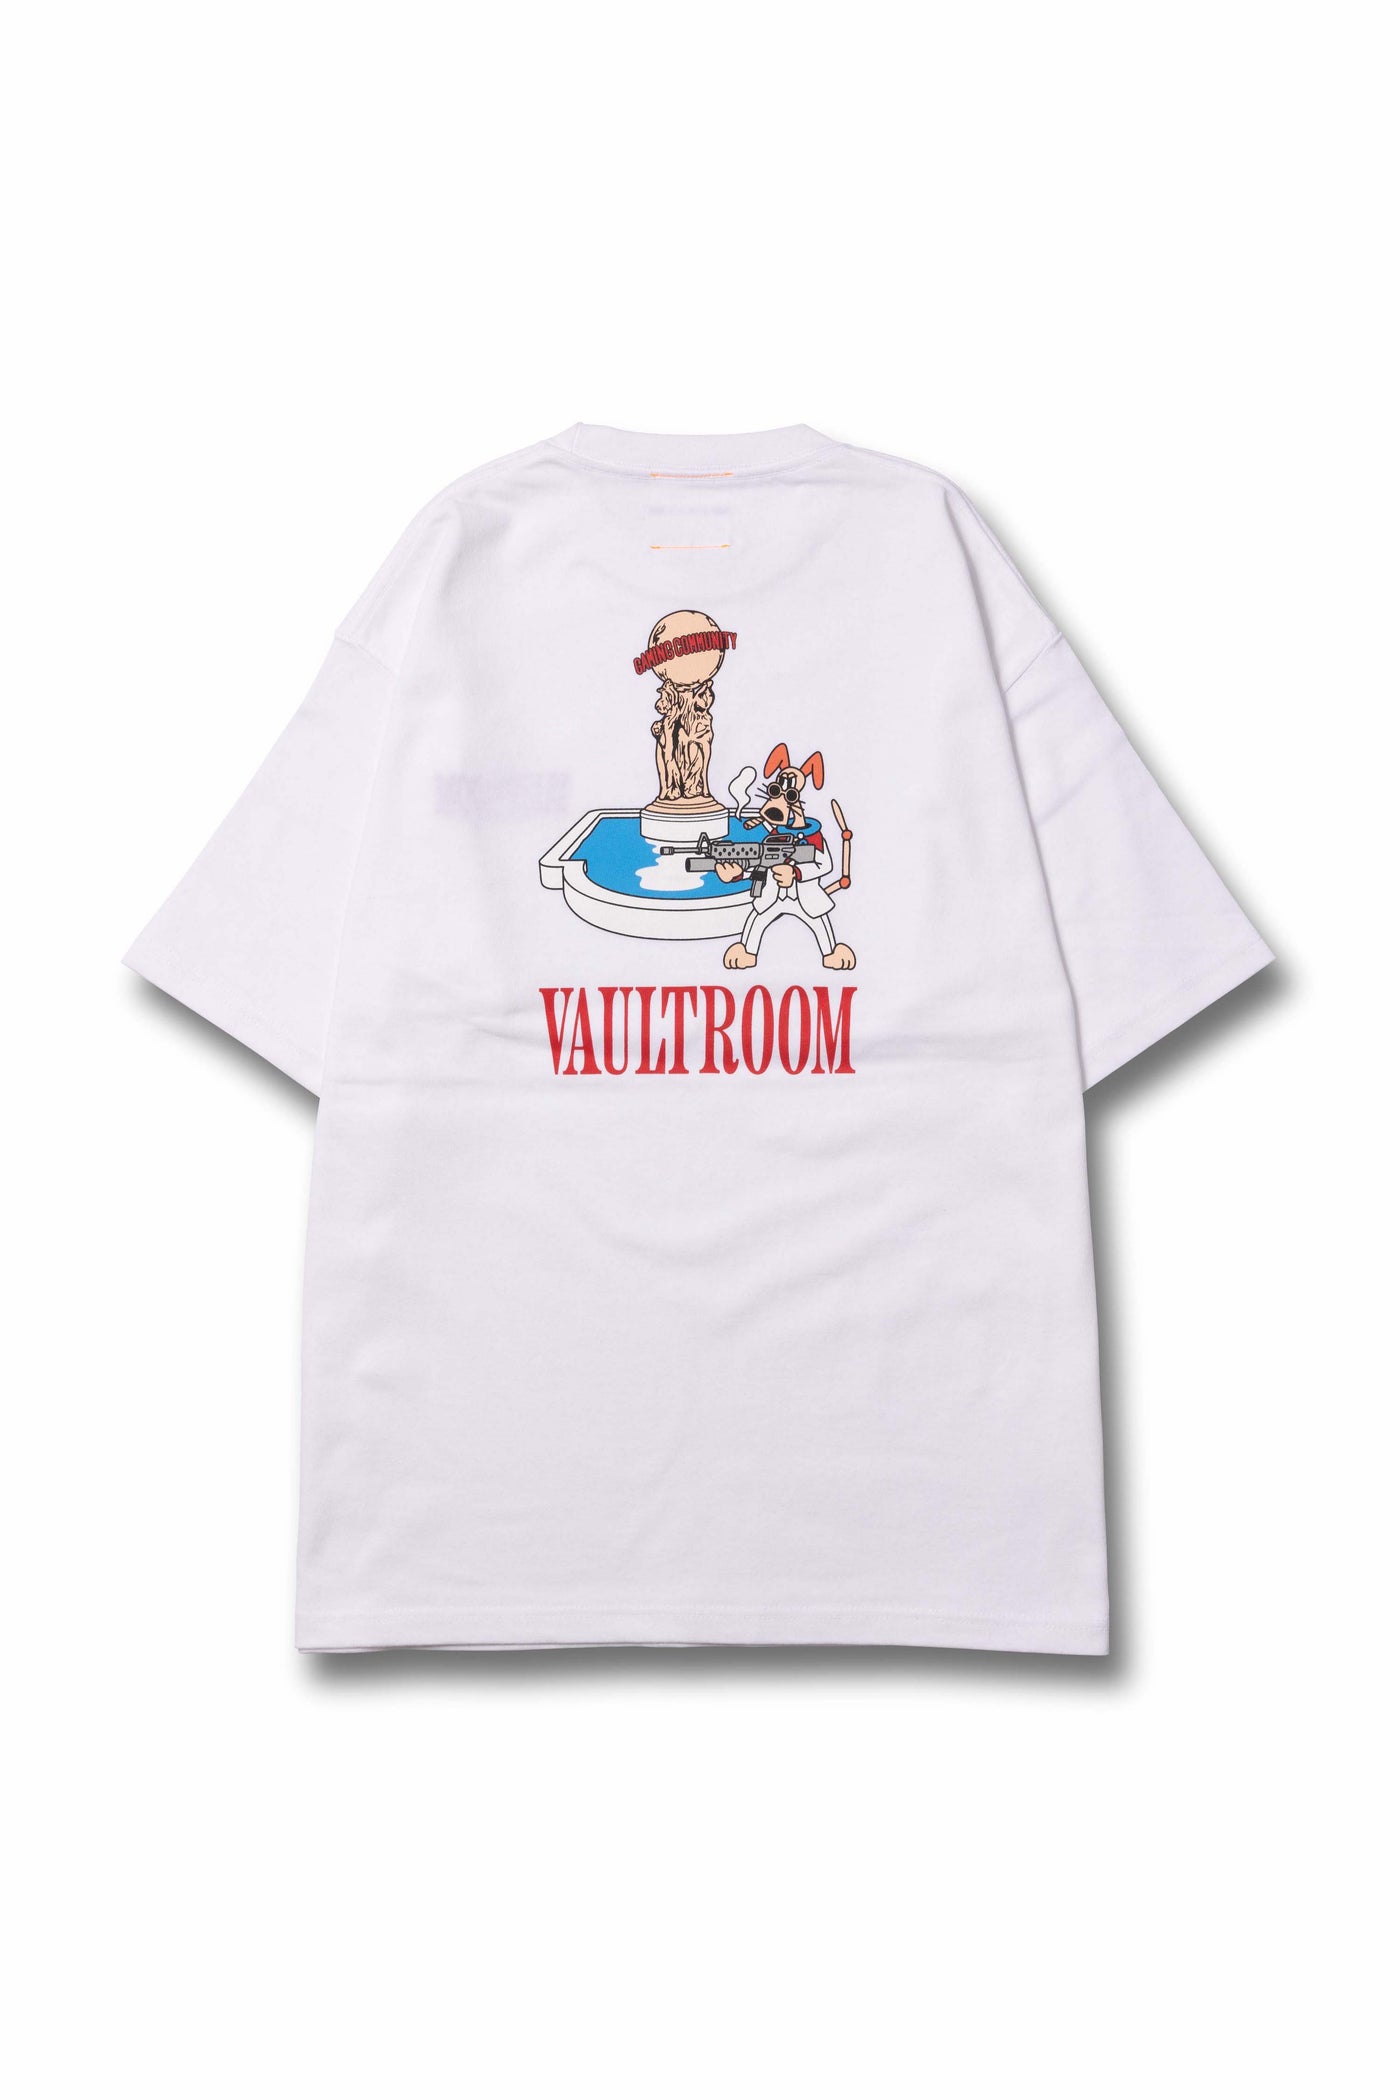 あかりんvaultroom YAH3 TEE / WHT XL ボルトルーム Tシャツ